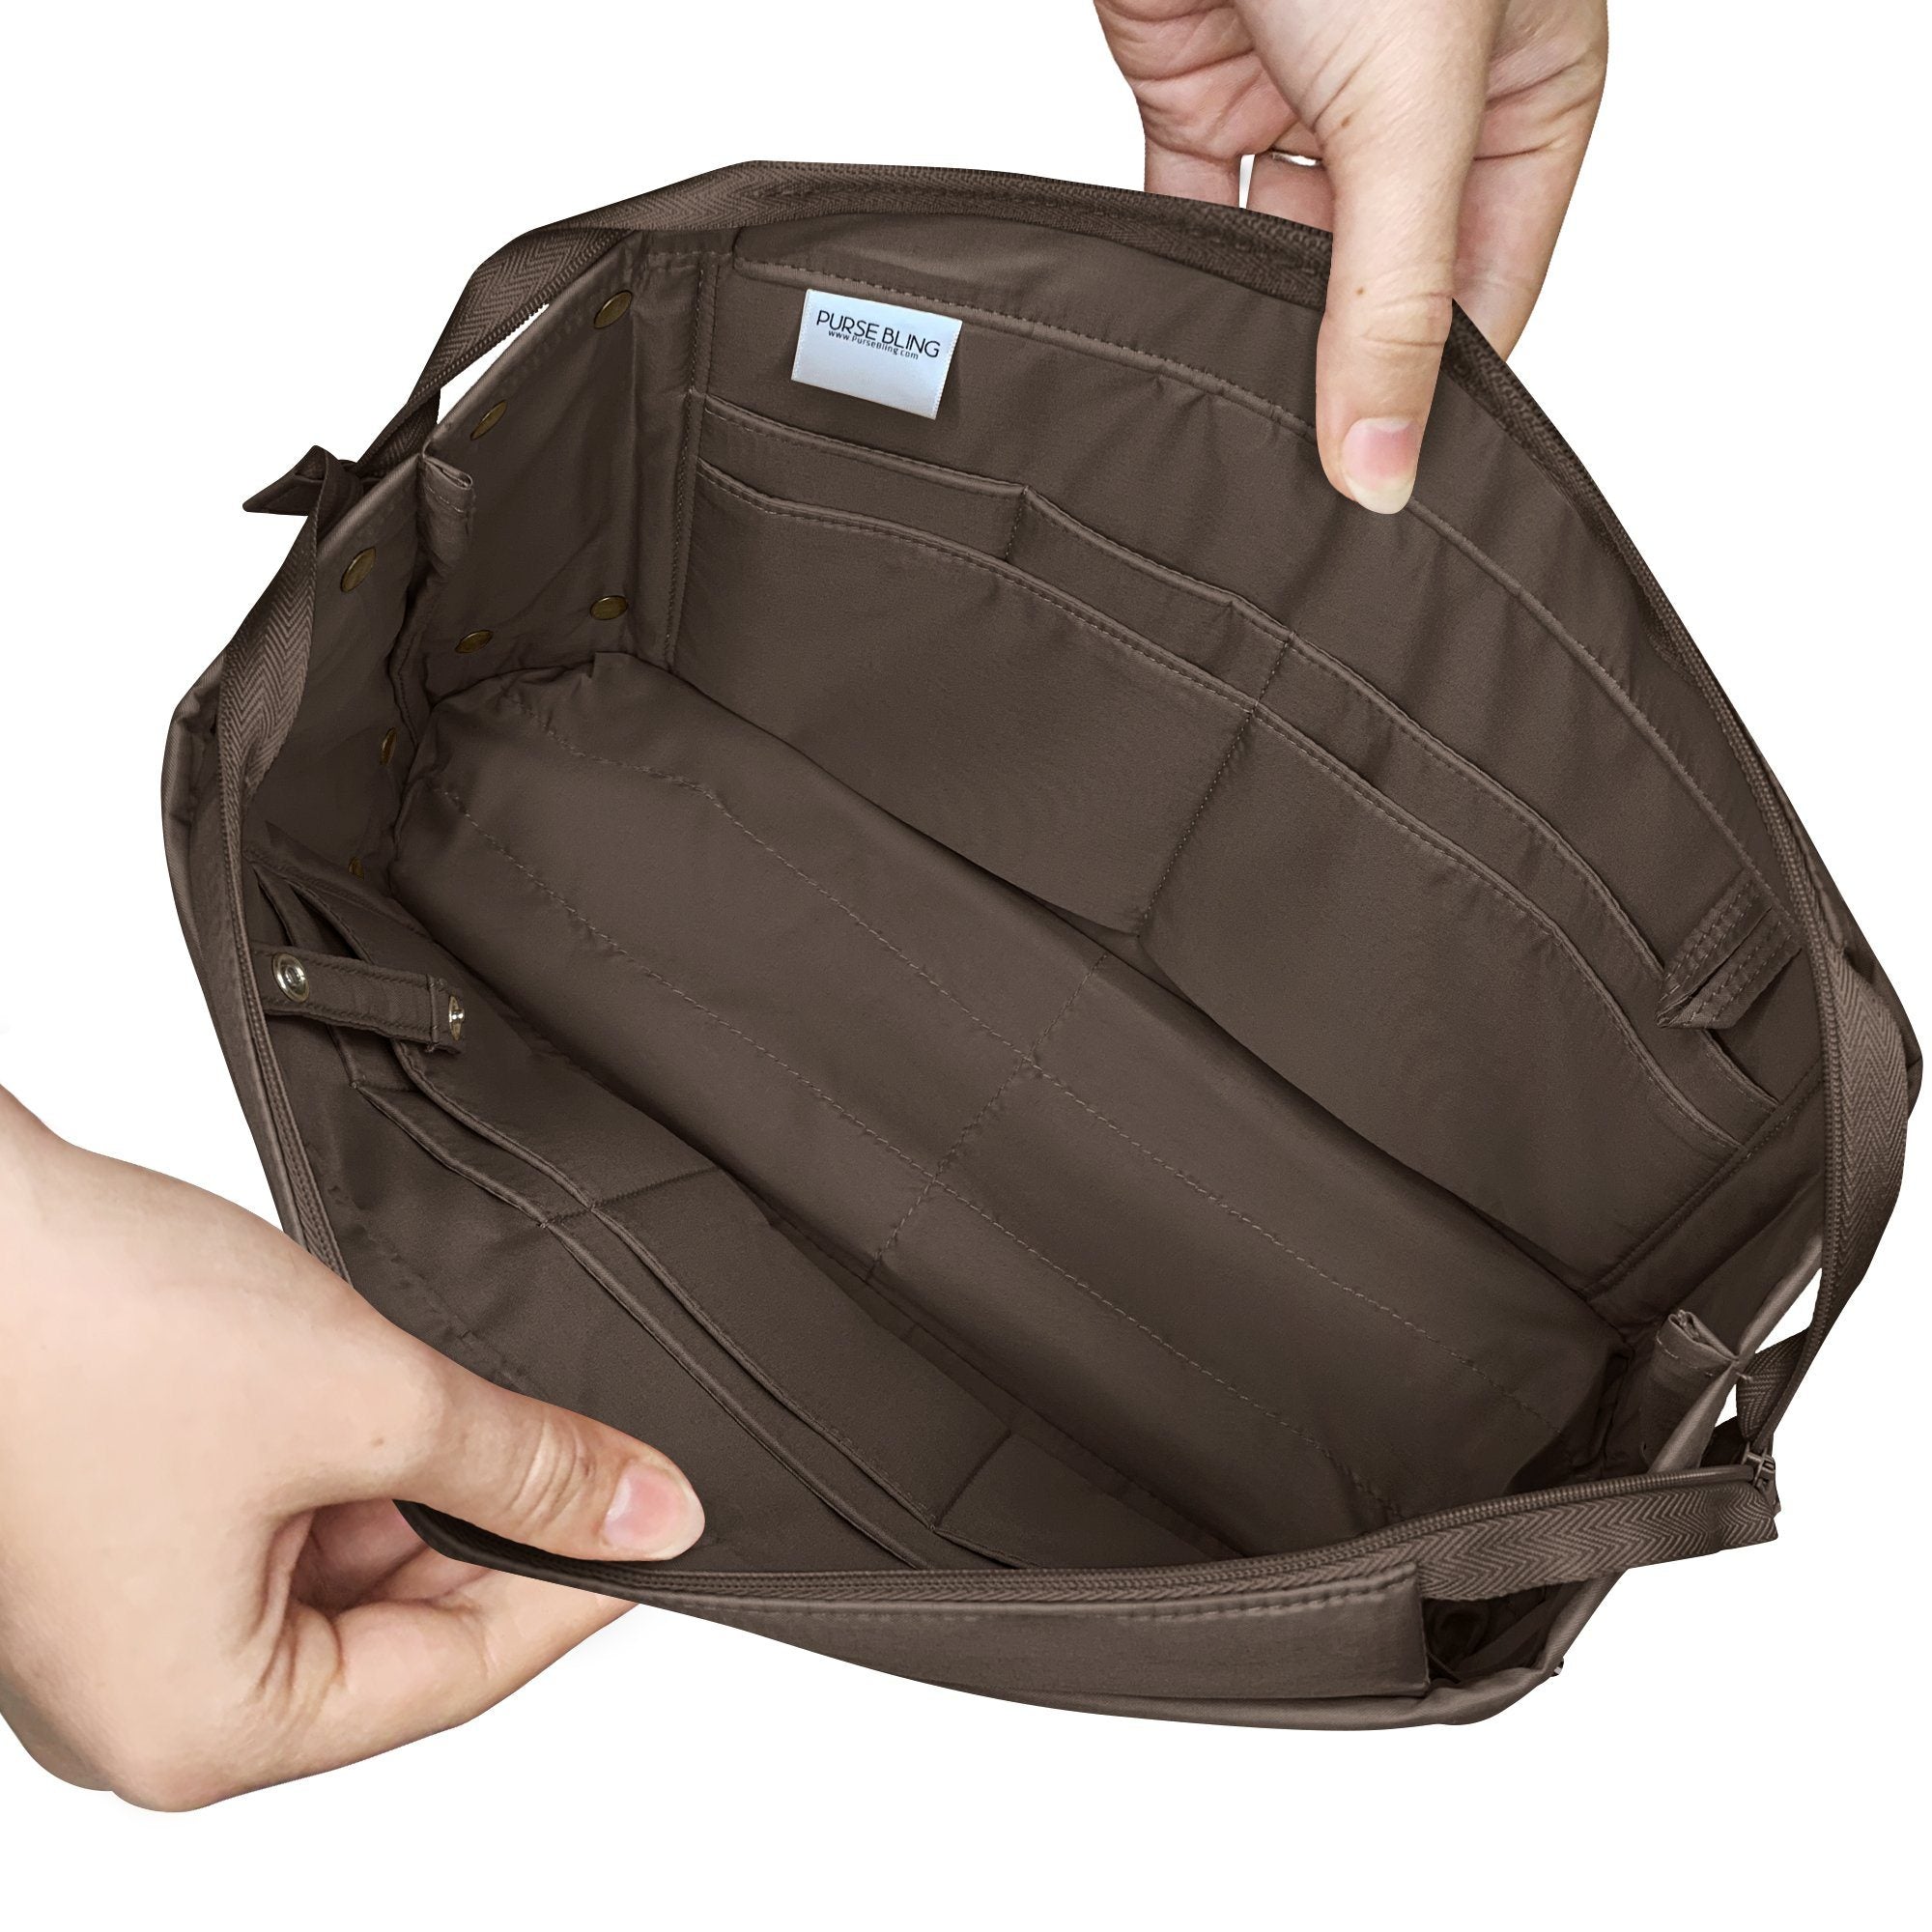 Felt Purse Organizer Insert, Bag with Zipper Inner Pocket for LV